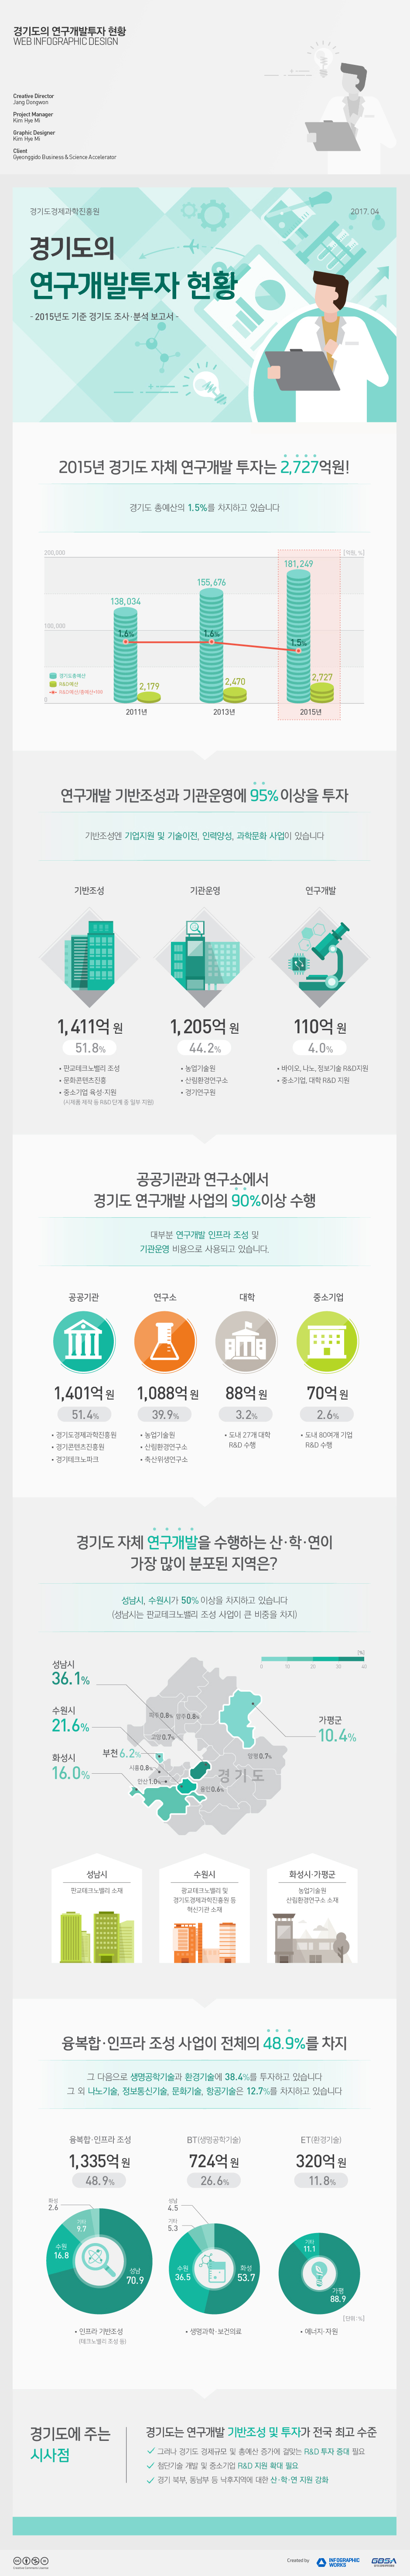 경기도의-연구개발투자현황-홈페이지